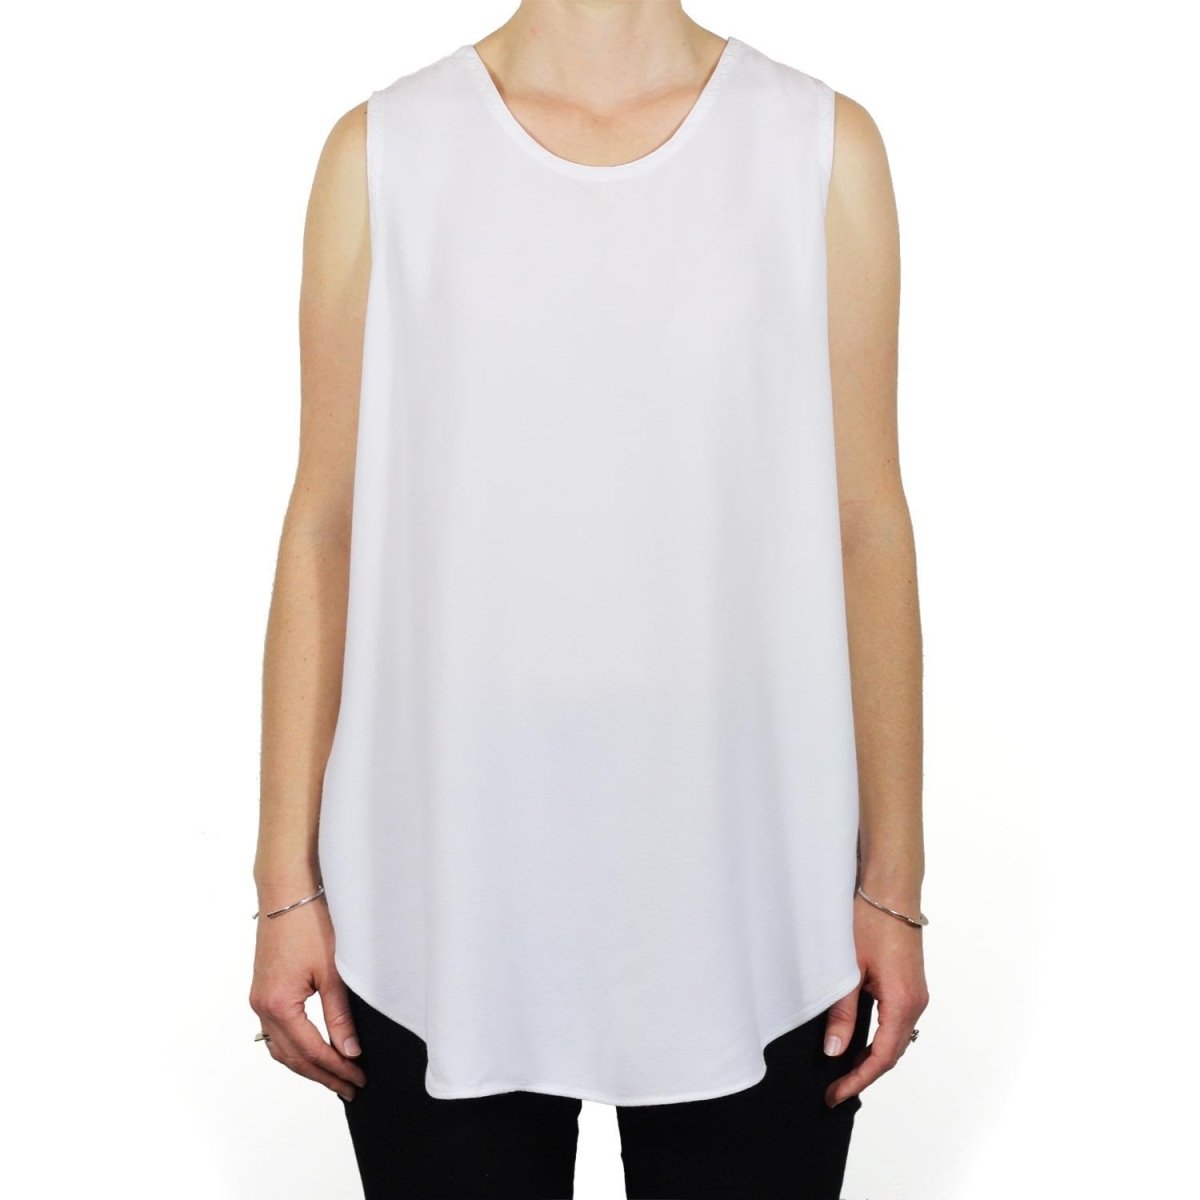 Tienda Ho Clothing Tank Top Sleeveless Shirt in White